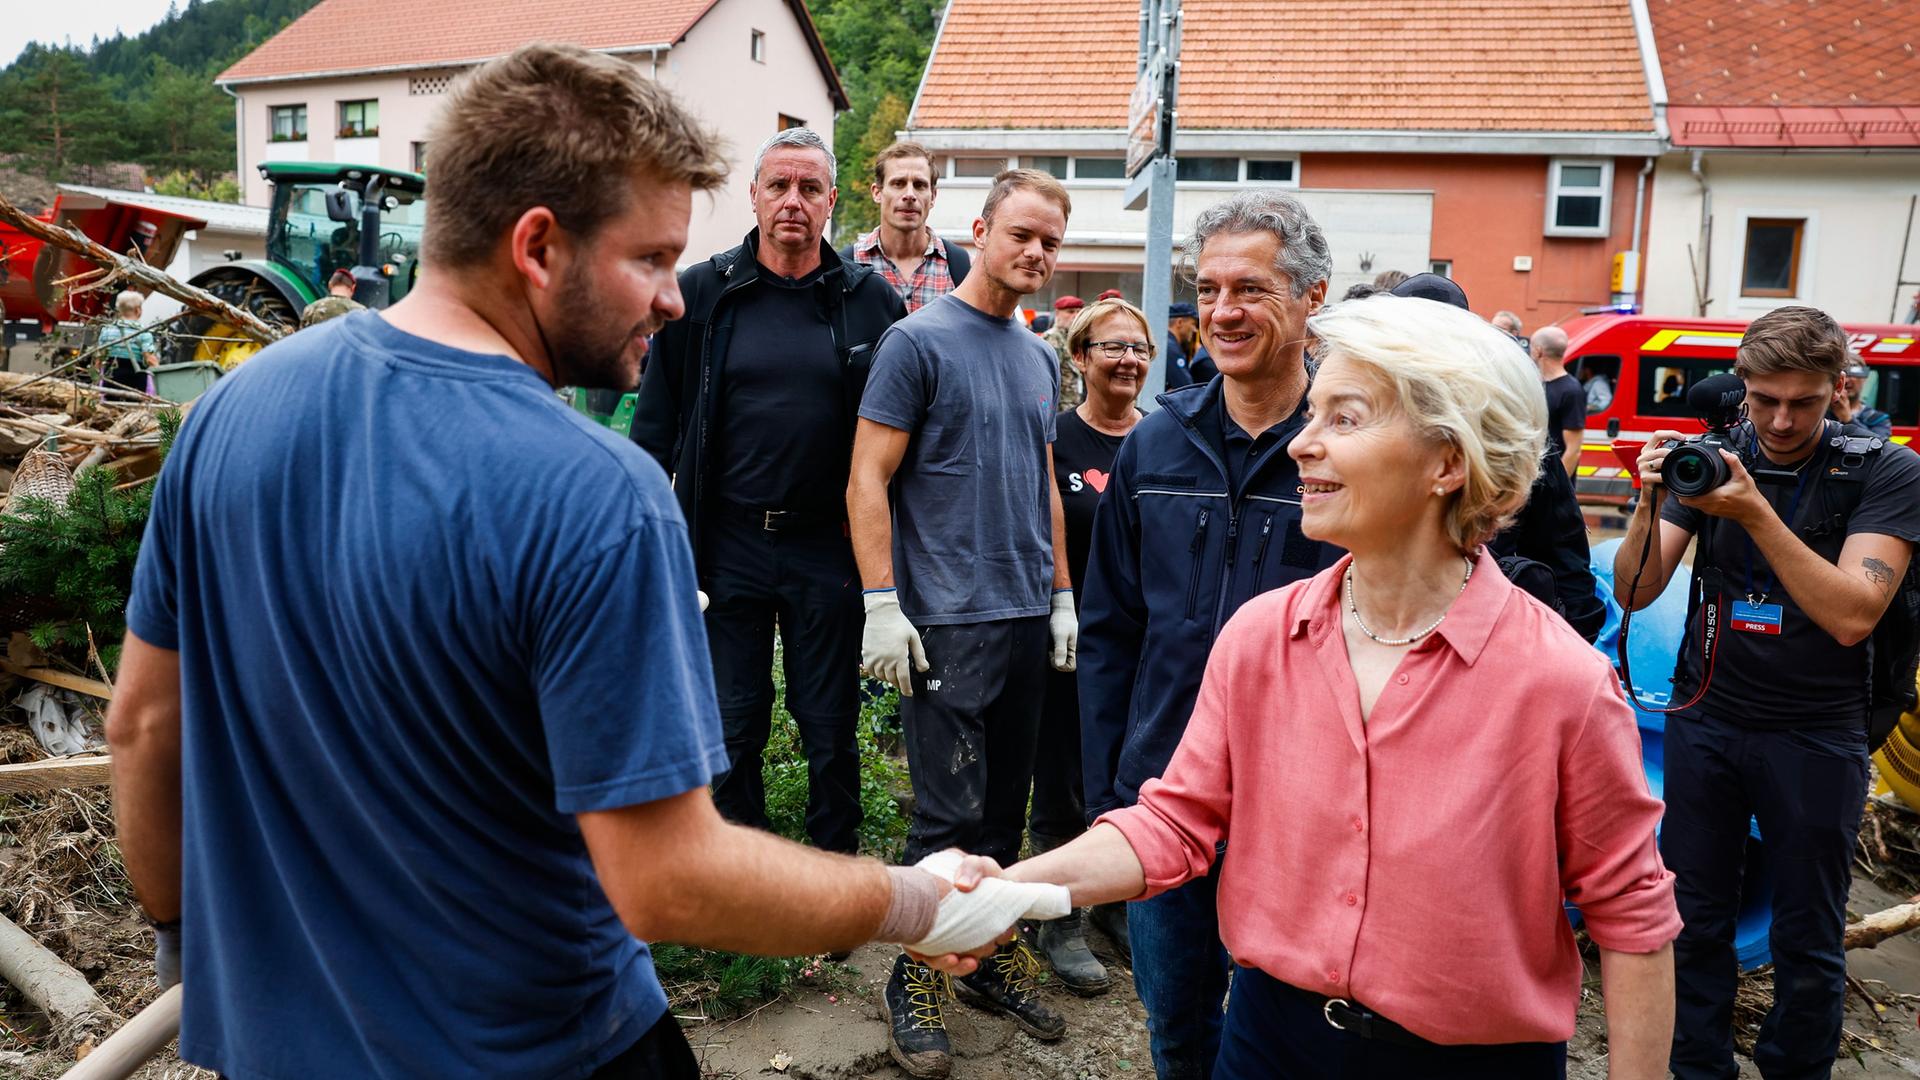 Slowenien: Ursula von der Leyen, Präsidentin der Europäischen Kommission, besucht ein Katastrophengebiet in Slowenien und schüttelt einem Mann die Hand.